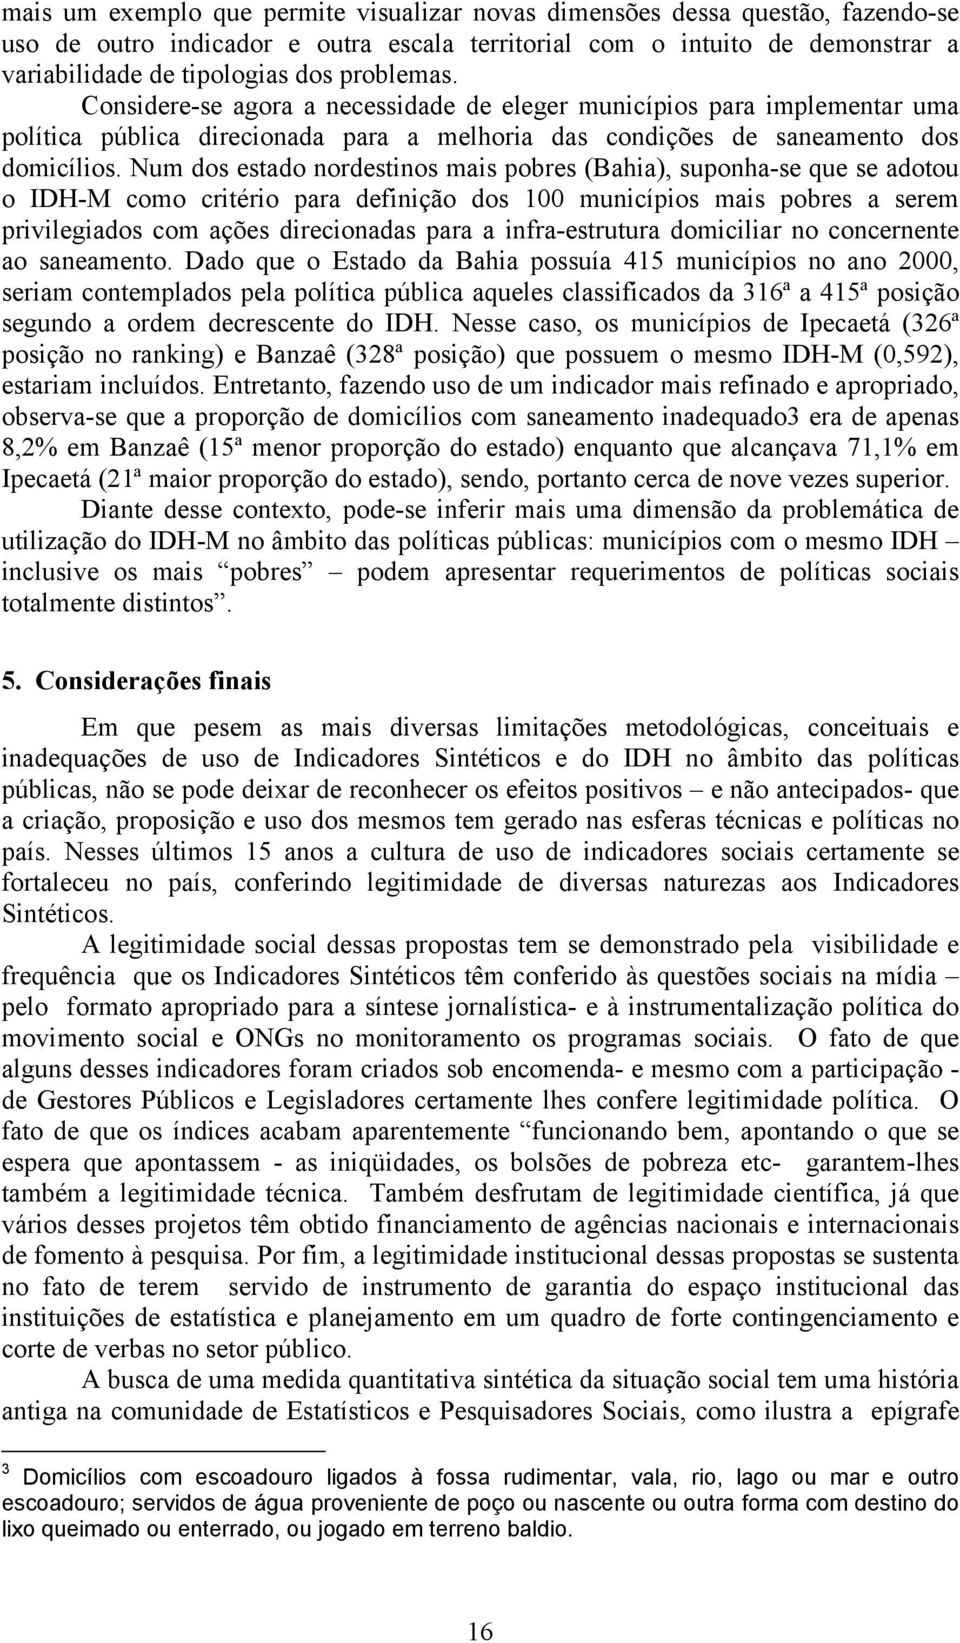 Num dos estado nordestinos mais pobres (Bahia), suponha-se que se adotou o IDH-M como critério para definição dos 100 municípios mais pobres a serem privilegiados com ações direcionadas para a